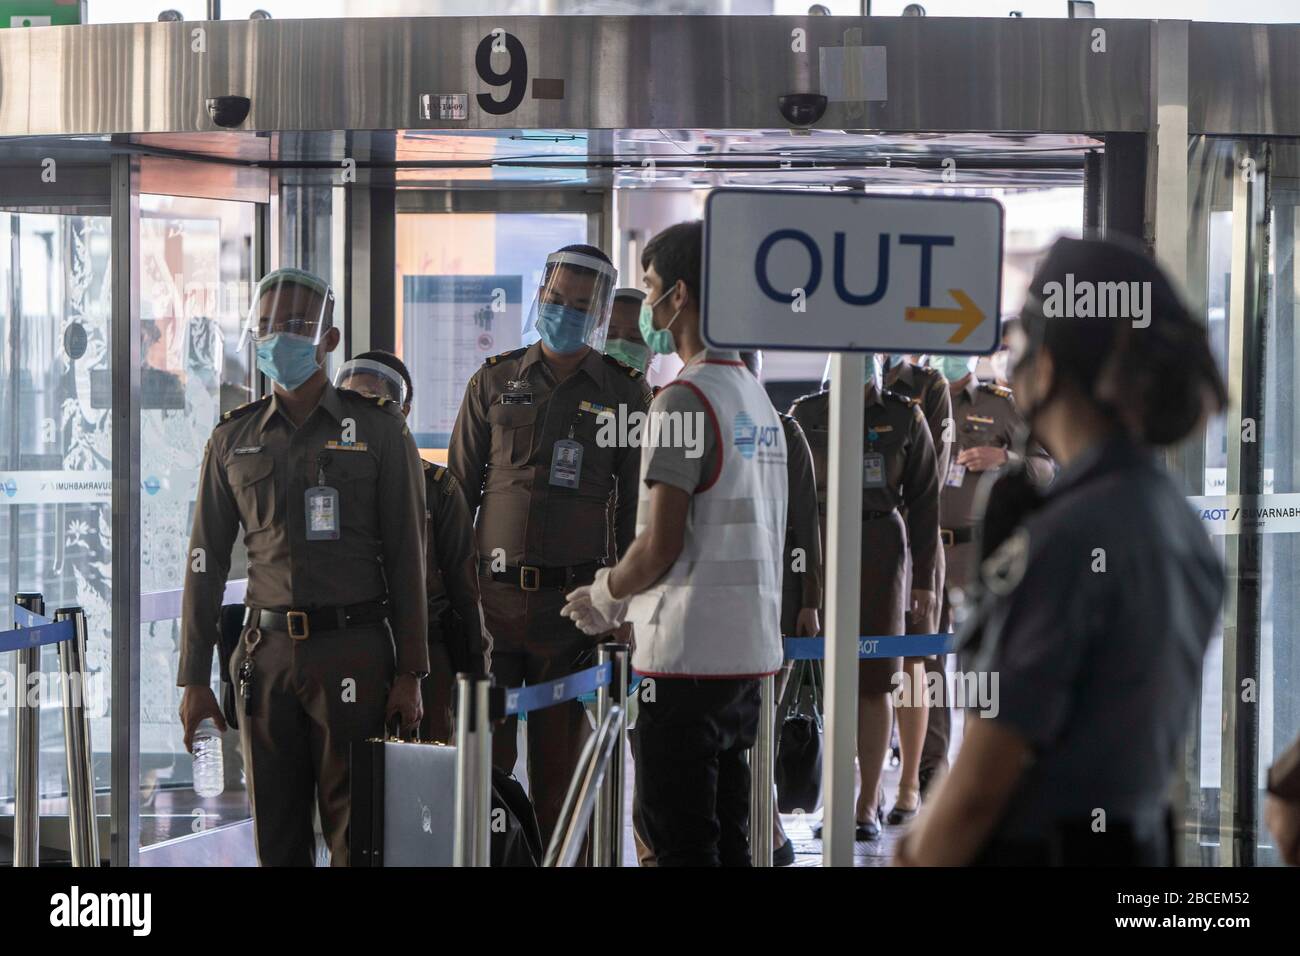 4 aprile 2020, Bangkok, Bangkok, Thailandia: La Thailandia ha vietato tutti i voli internazionali di sbarco nel paese a partire da aprile 4th almeno fino alla fine di lunedì aprile 6th. L'aeroporto internazionale Suvanarbhumi di Bangkok, uno dei 2 aeroporti internazionali che servono la capitale tailandese, era un'ombra di sé, in quanto le sale di partenza e i banchi di check-in erano in gran parte vuoti di persone e attività. Queste misure estreme sono state messe in atto nel tentativo di impedire l'importazione nel paese di nuovi casi di Covid-19. (Immagine di credito: © Adryel Talamantes/ZUMA Wire) Foto Stock